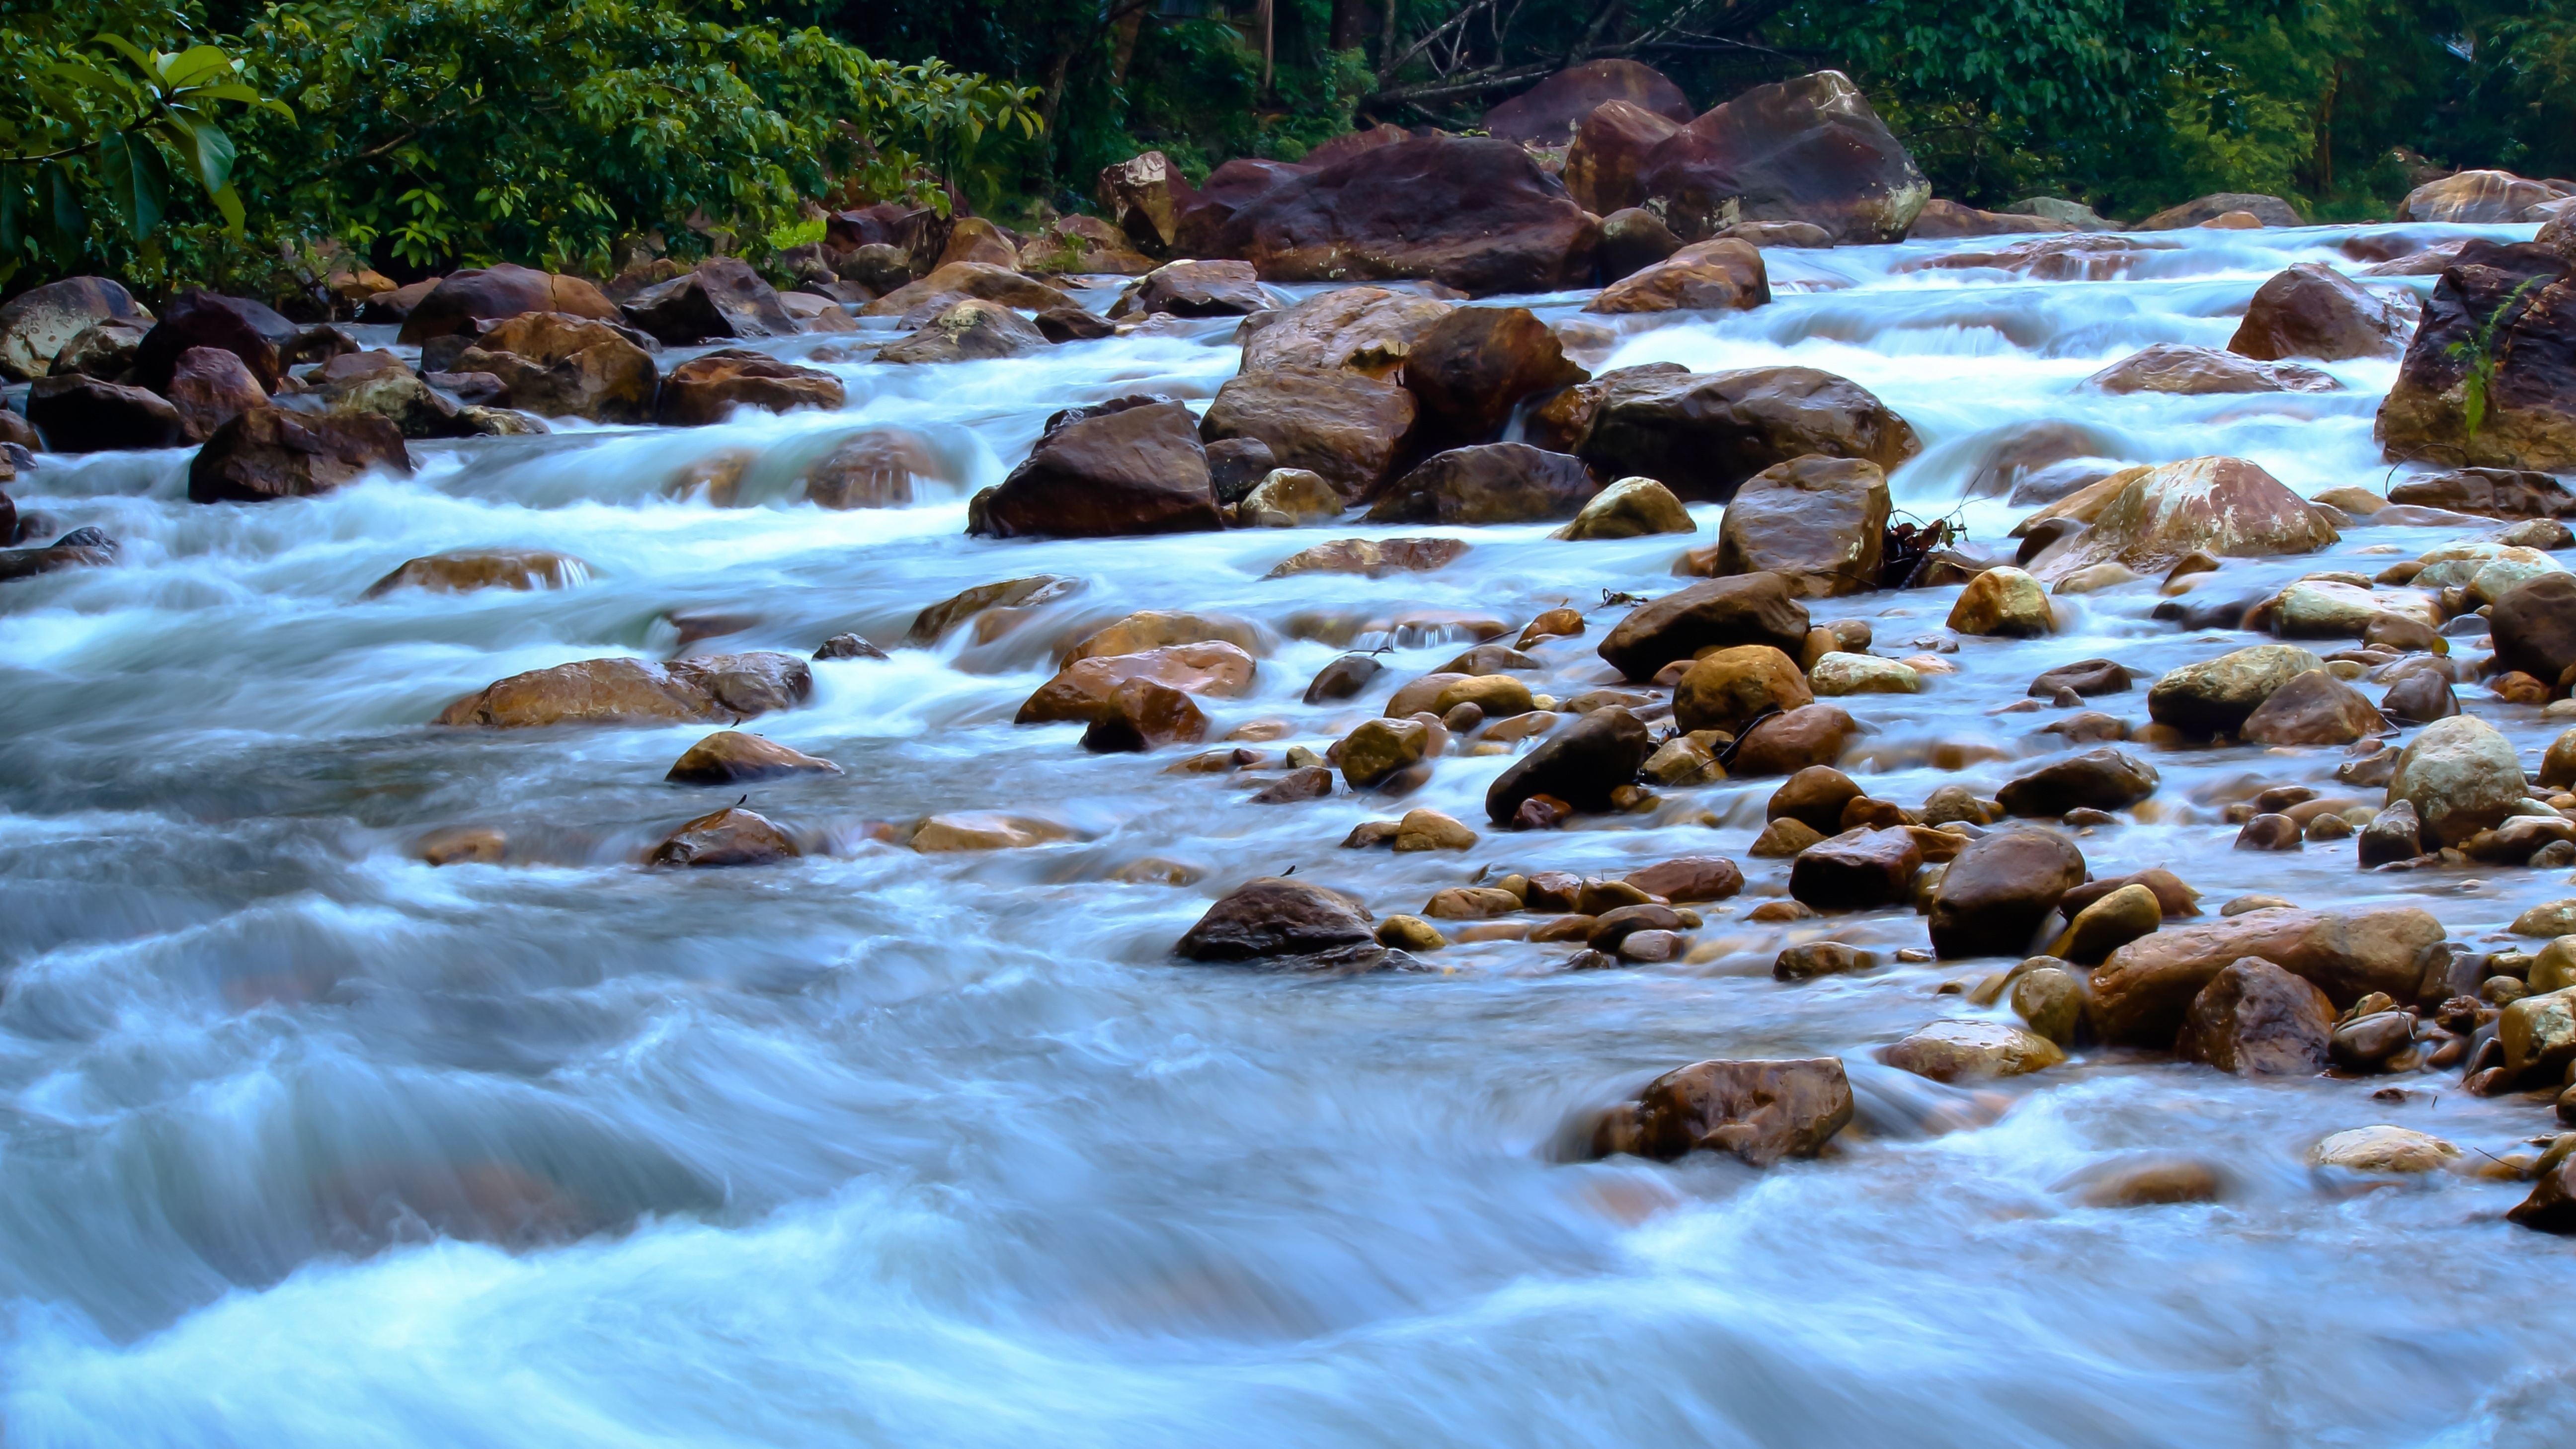 Стоком реки называют. Горная река. Вода горный ручей. Горная речка с камнями. Стремительная Горная река.